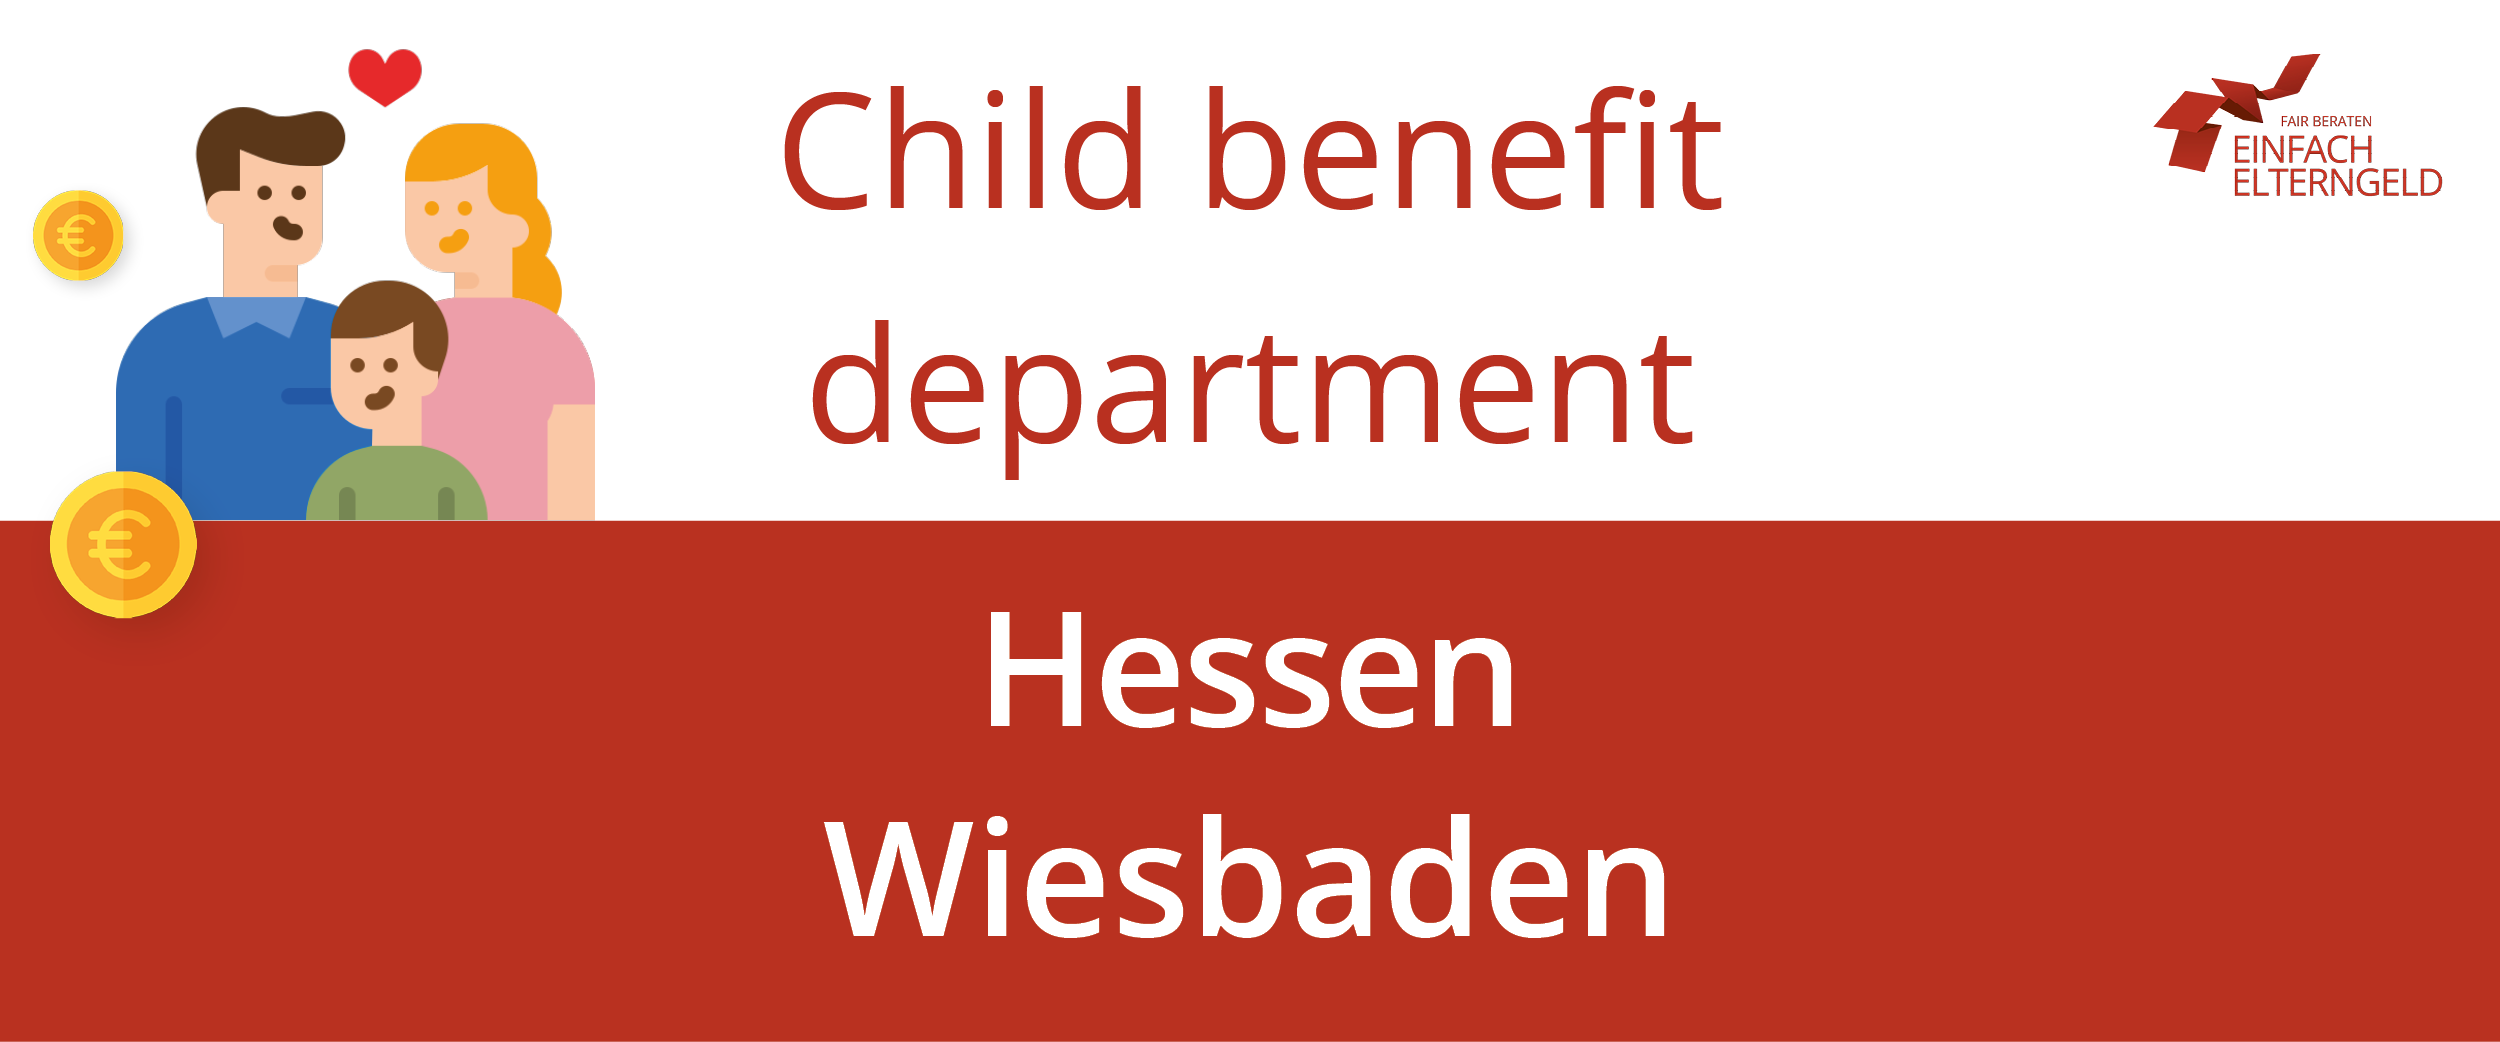 We present you the Child benefit department Hessen Wiesbaden.